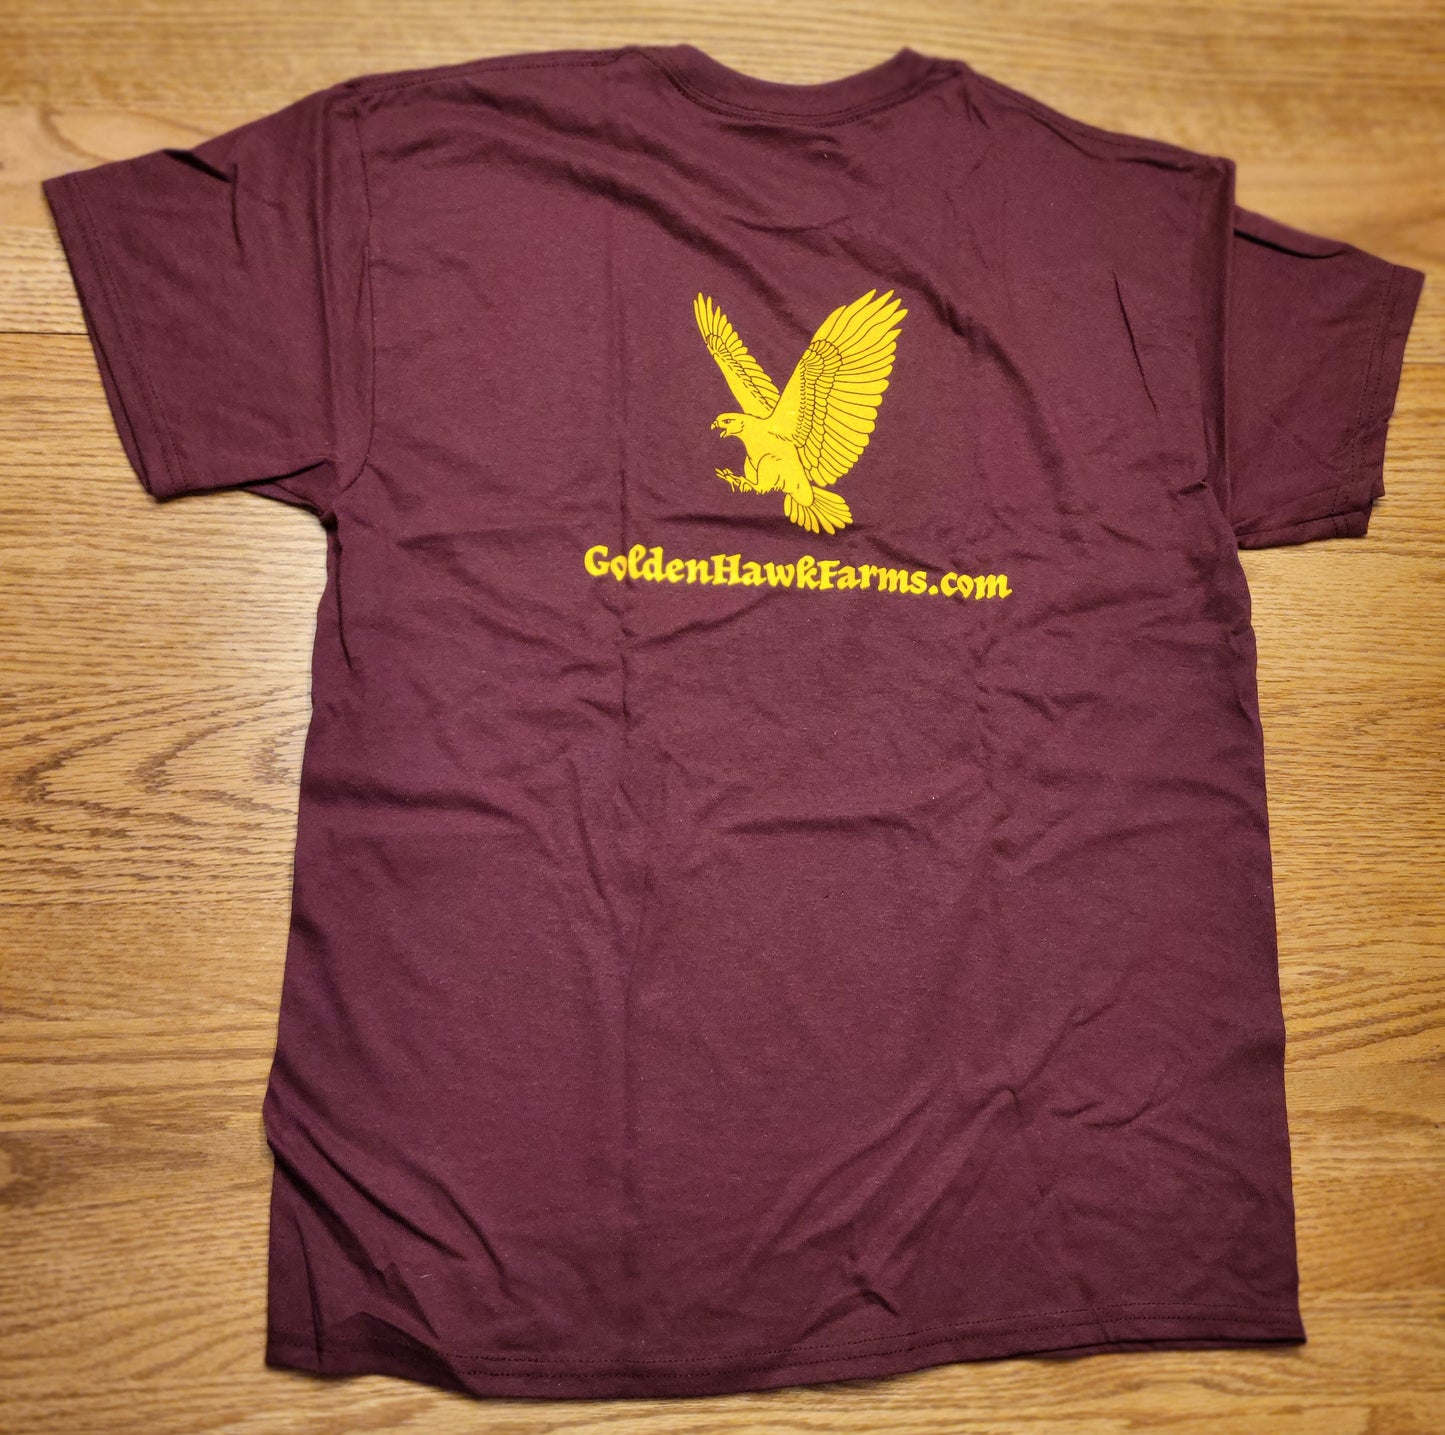 Short Sleeve Golden Hawk Farms T-Shirt